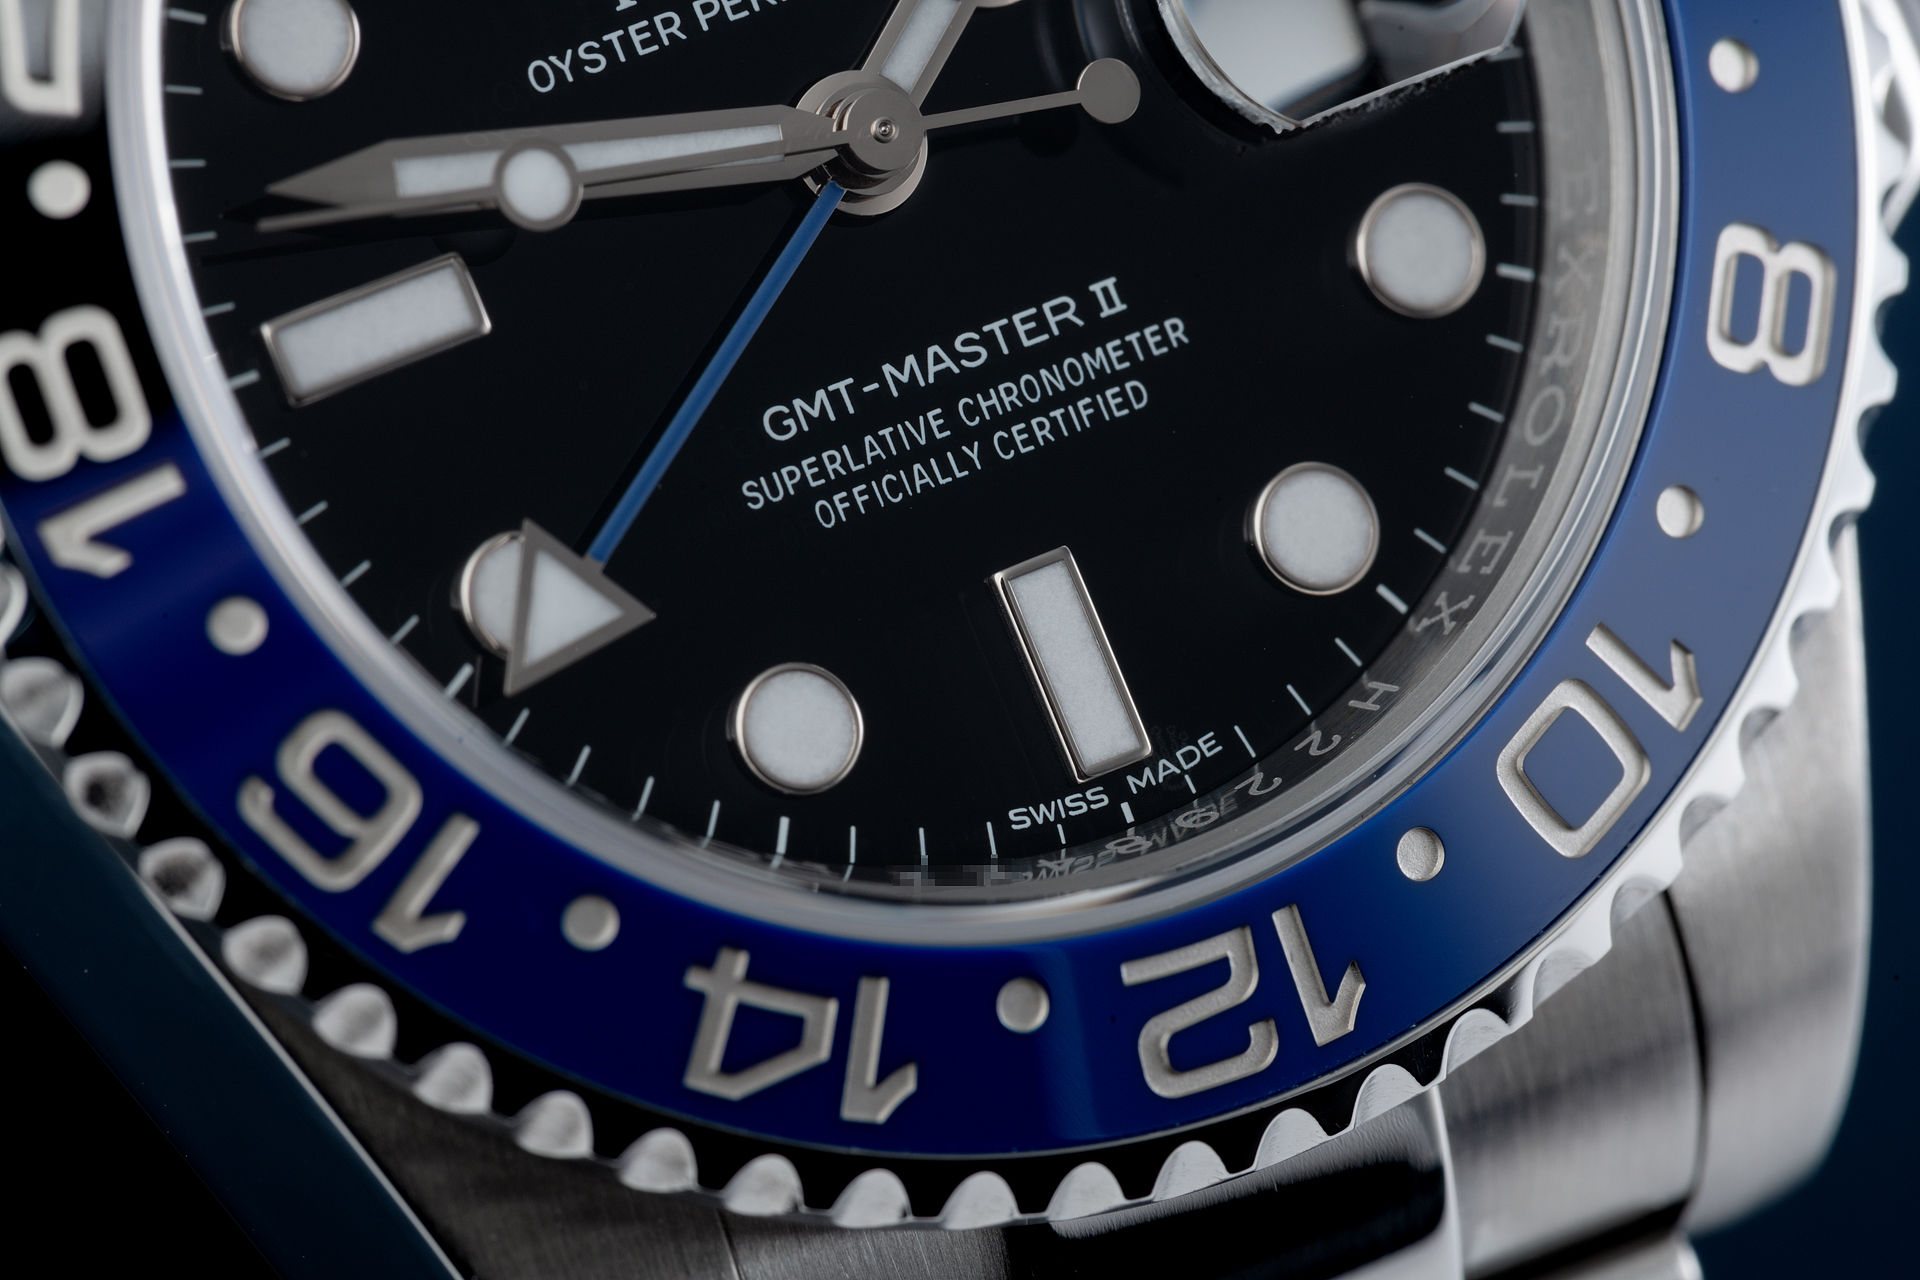 ref 116710BLNR | 'Under Rolex Warranty' | Rolex GMT-Master II